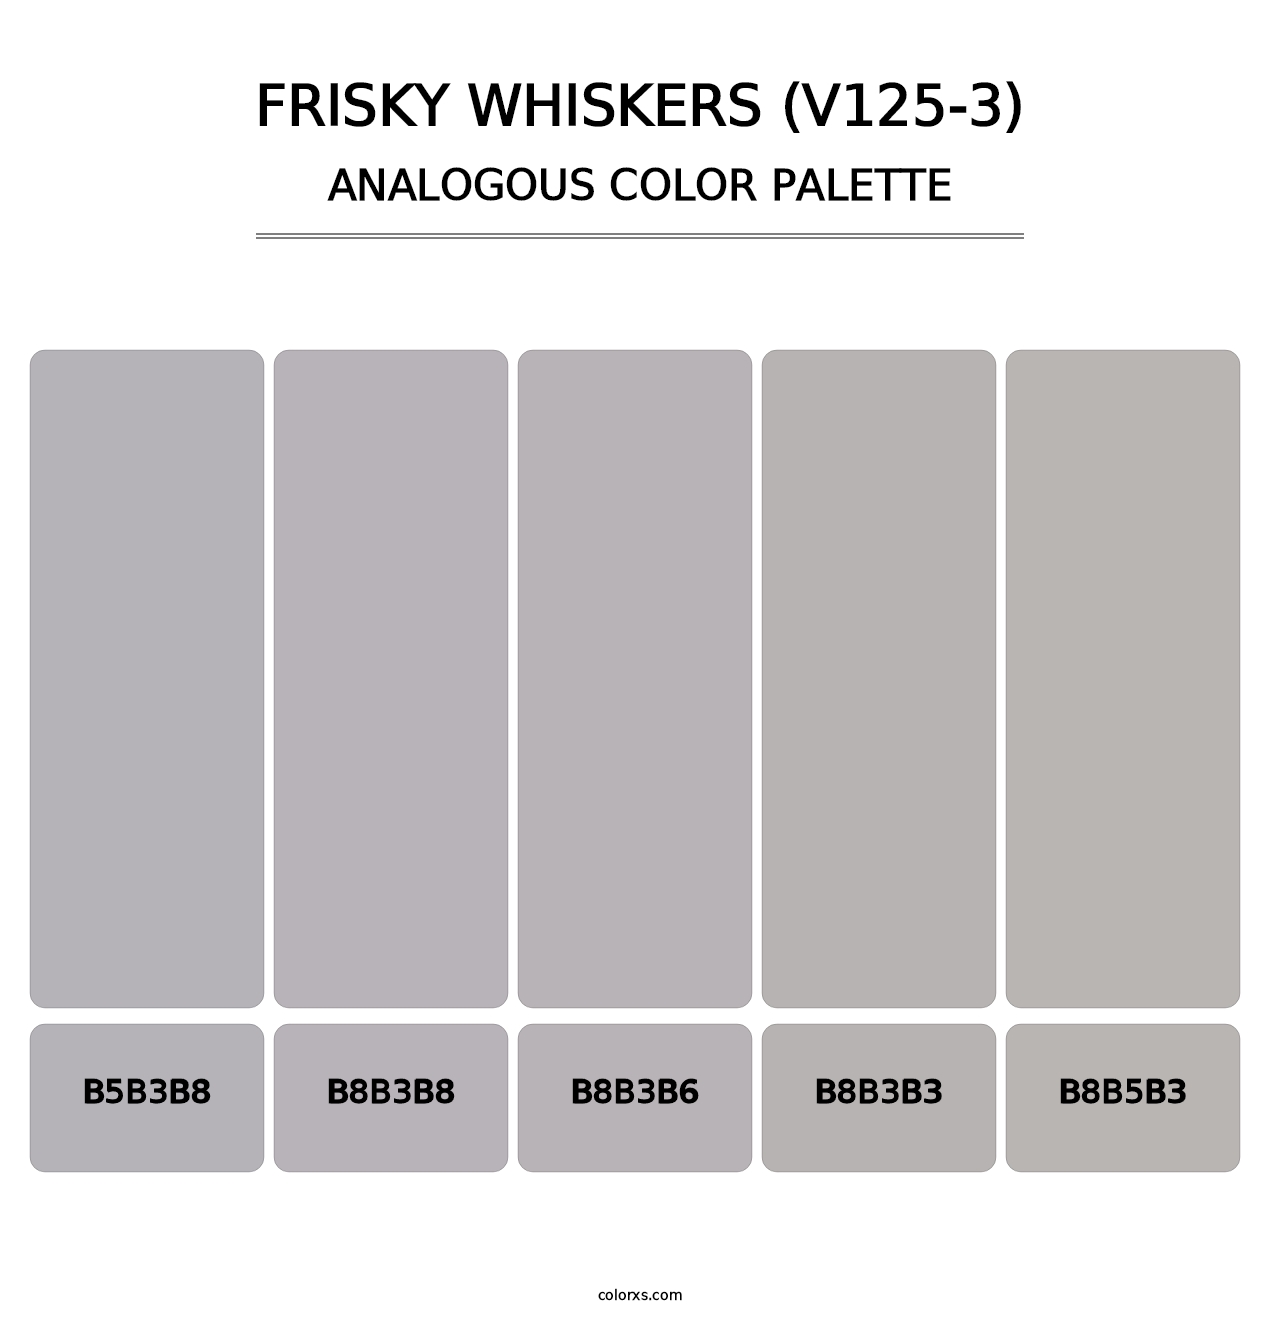 Frisky Whiskers (V125-3) - Analogous Color Palette